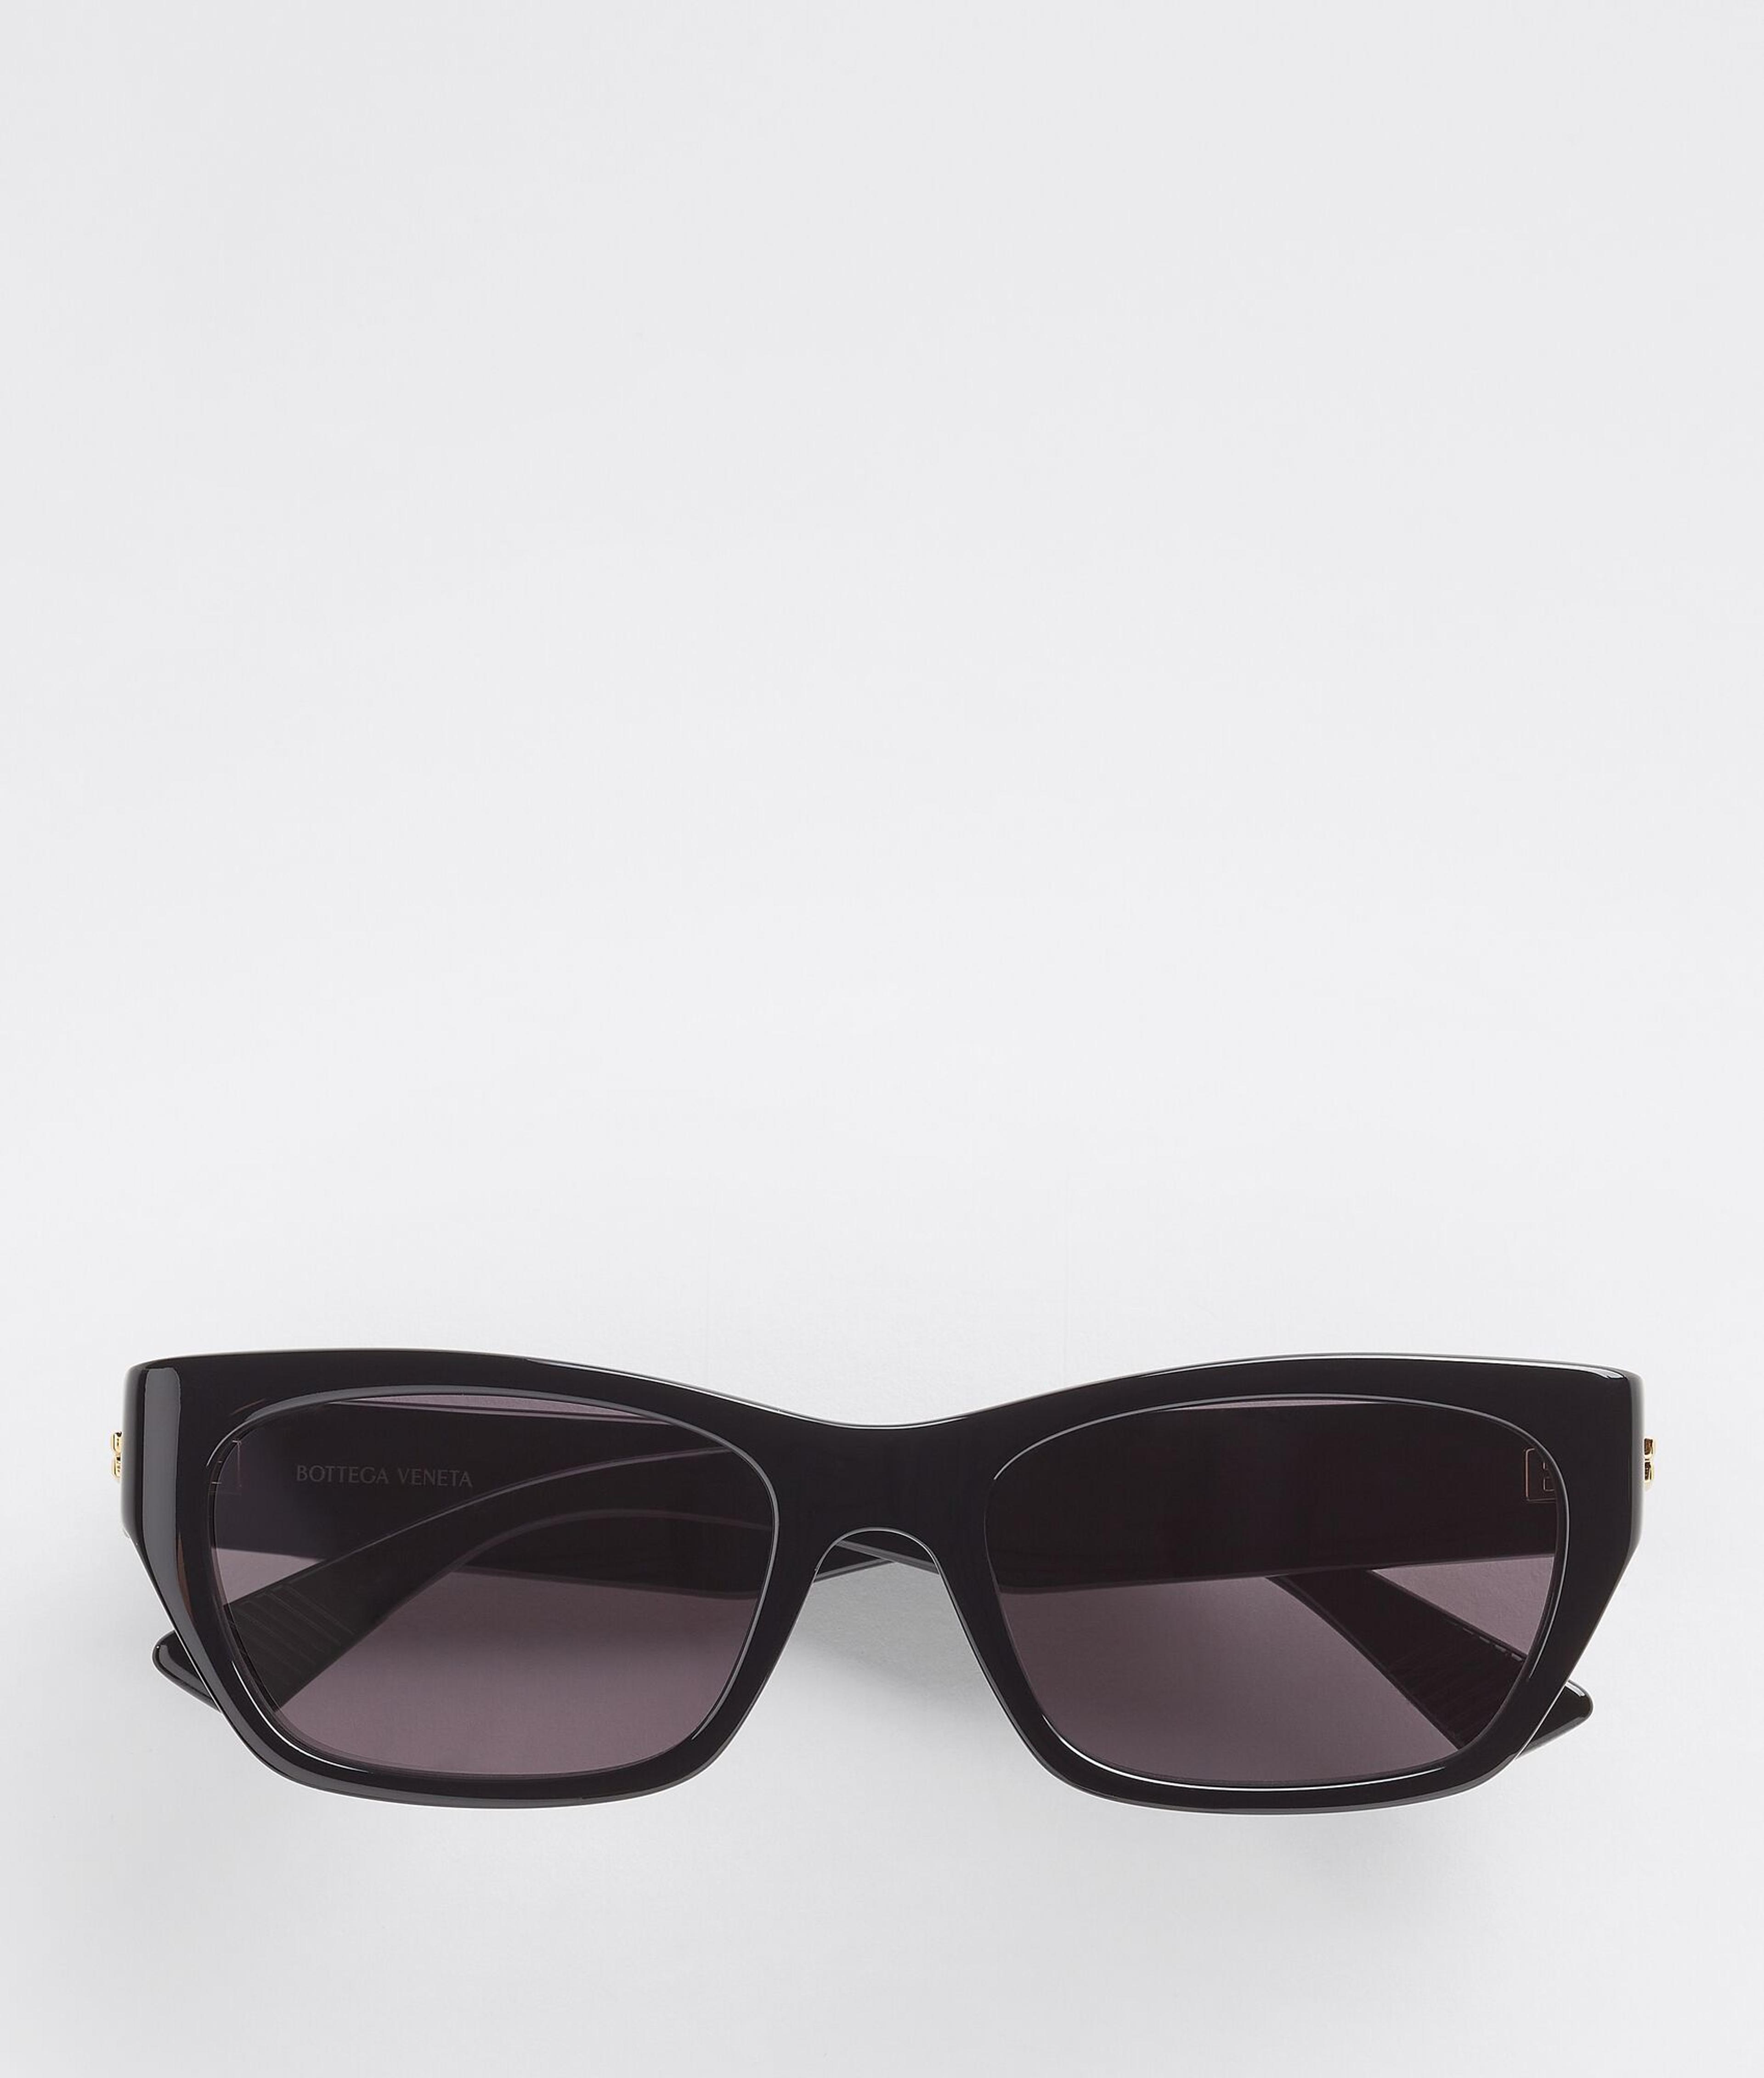 Bottega Veneta® Classic Acetate Square Sunglasses in Black / Grey. Shop online now.